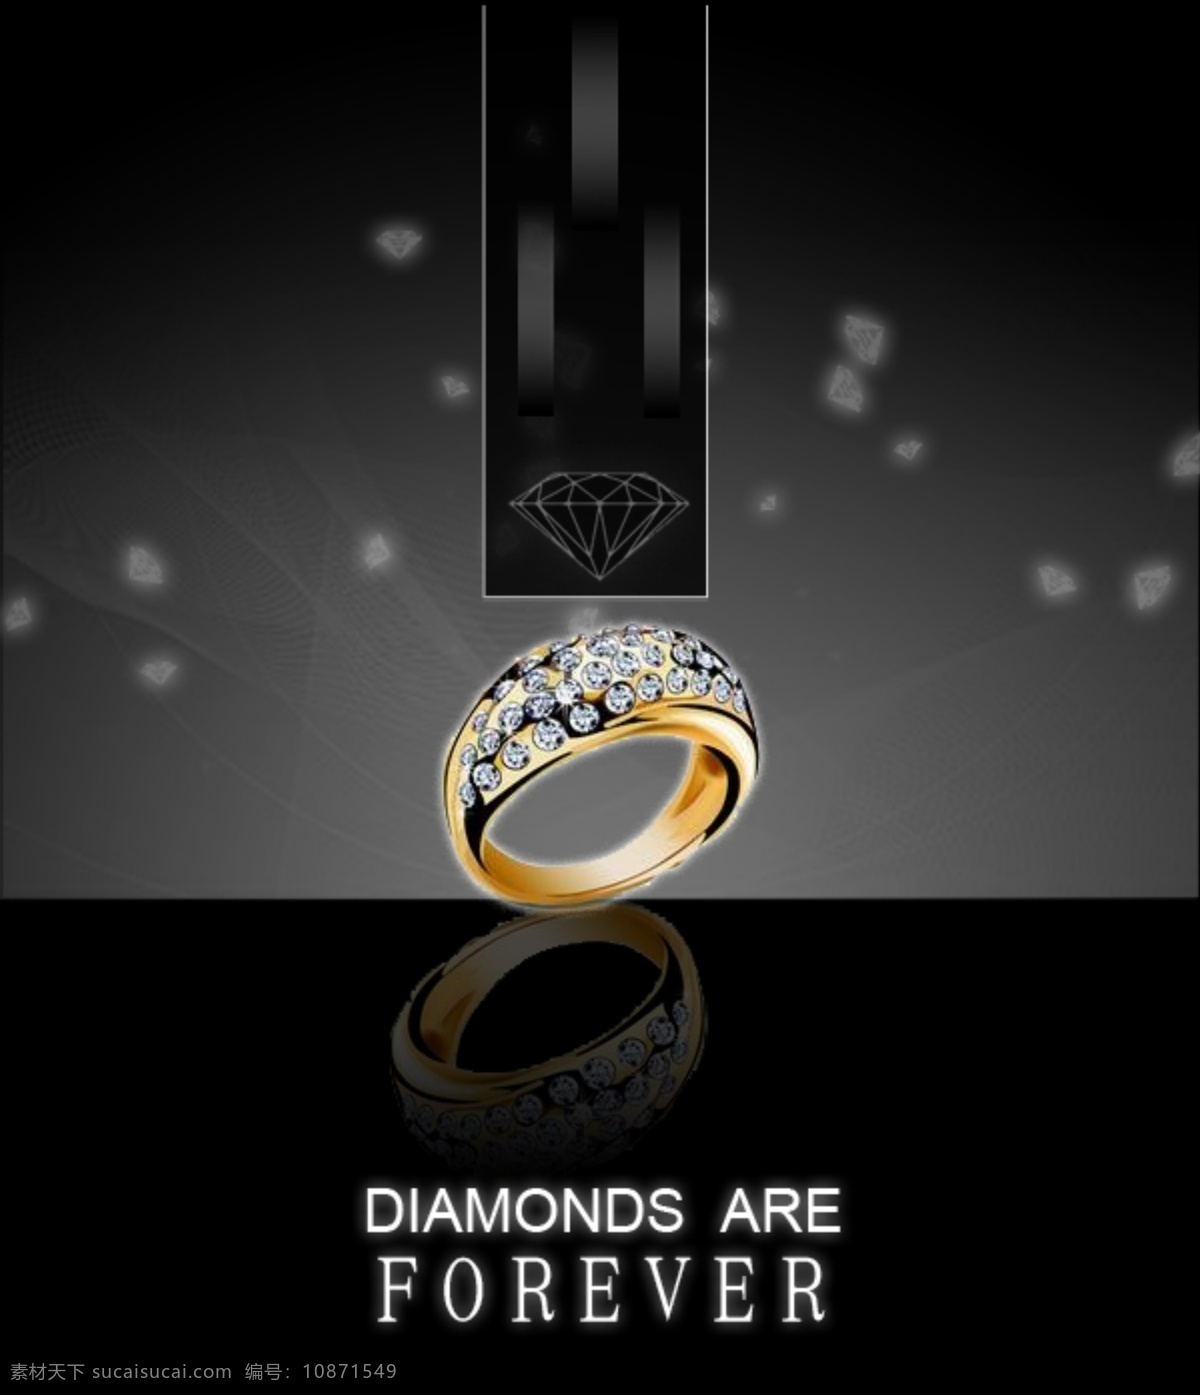 钻石 海报 forever diamonds are 原创设计 原创海报